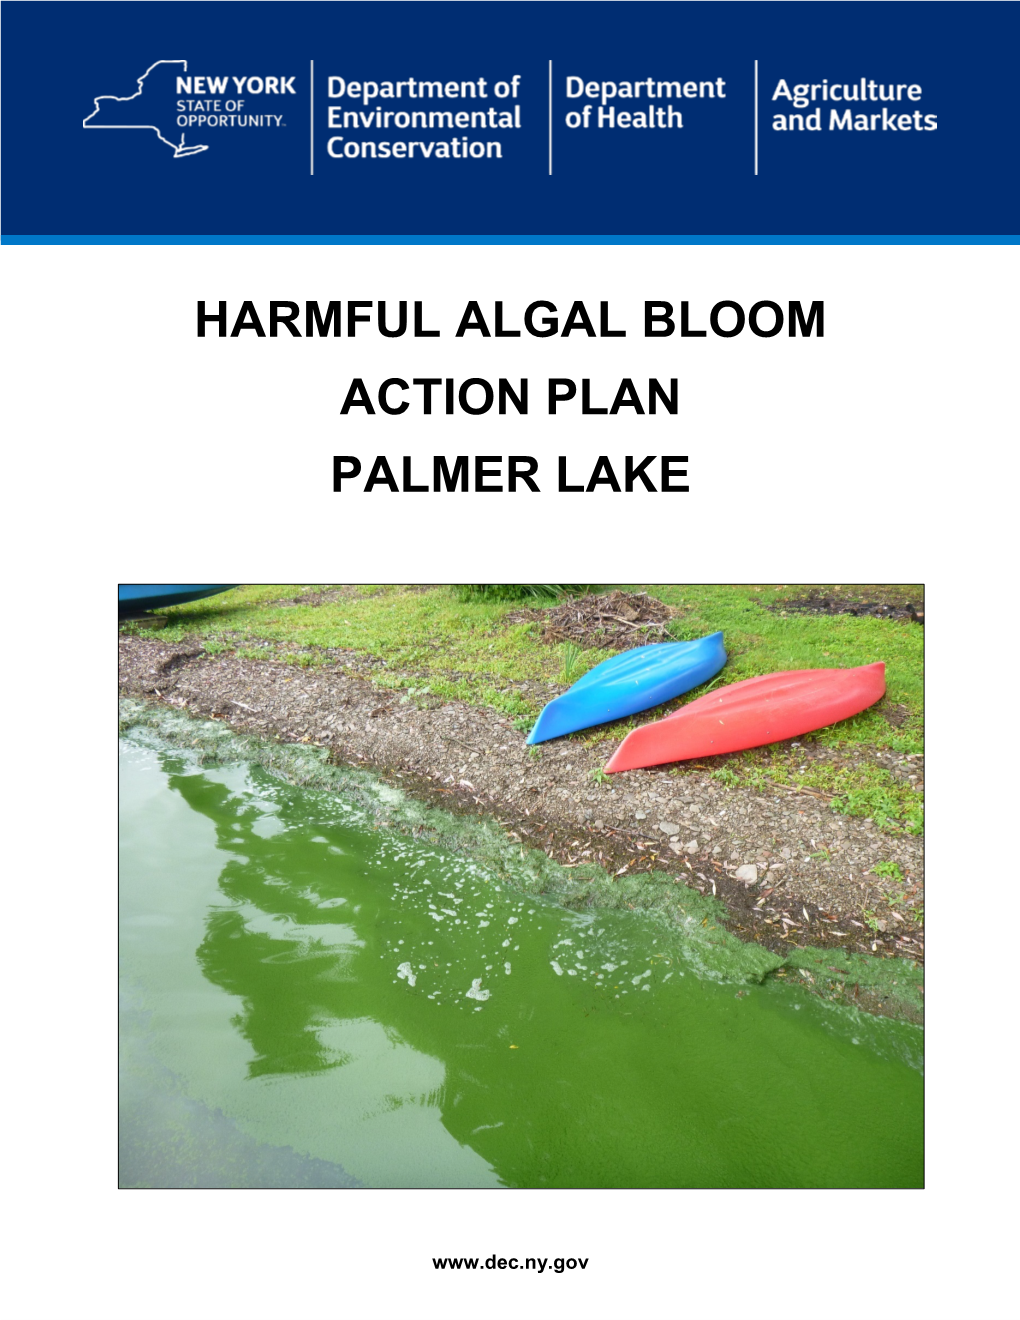 Harmful Algal Bloom Action Plan Palmer Lake